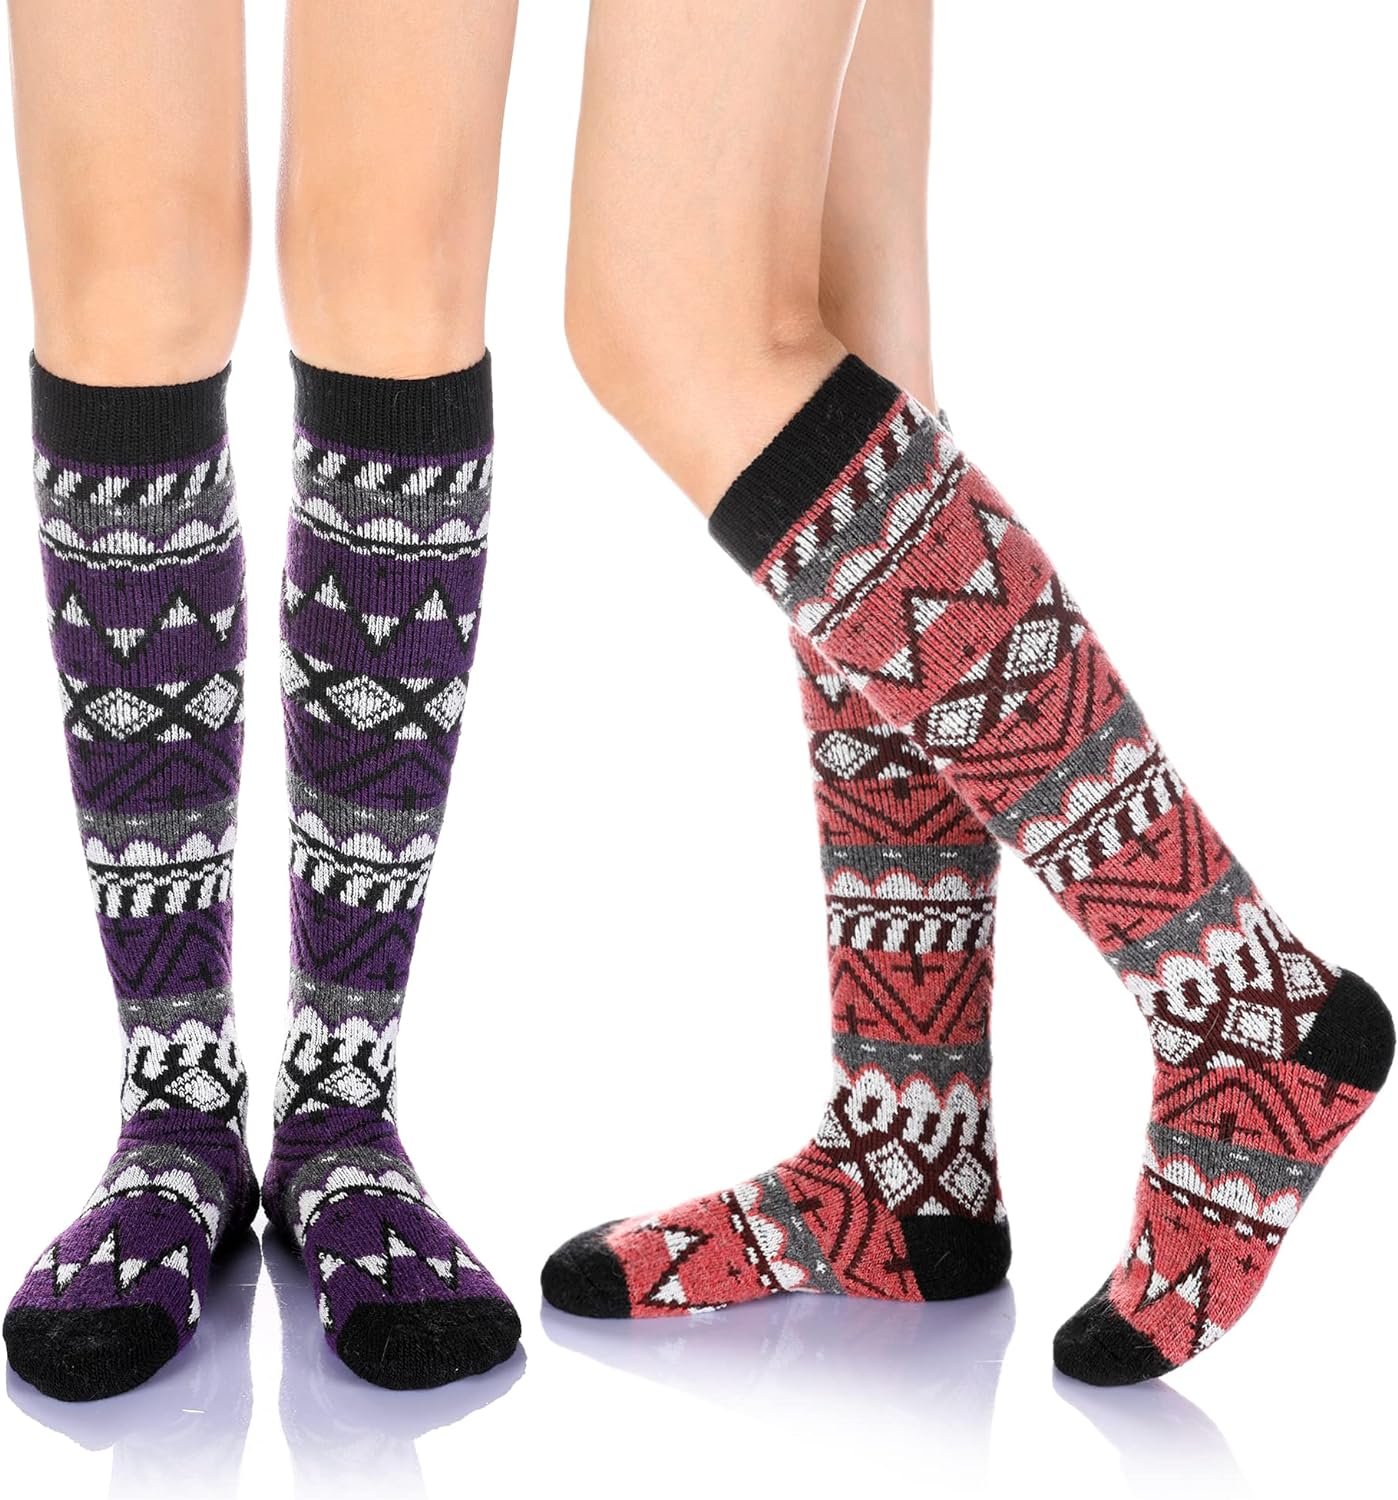 Eyean Women’s Knee High Wool Socks Review